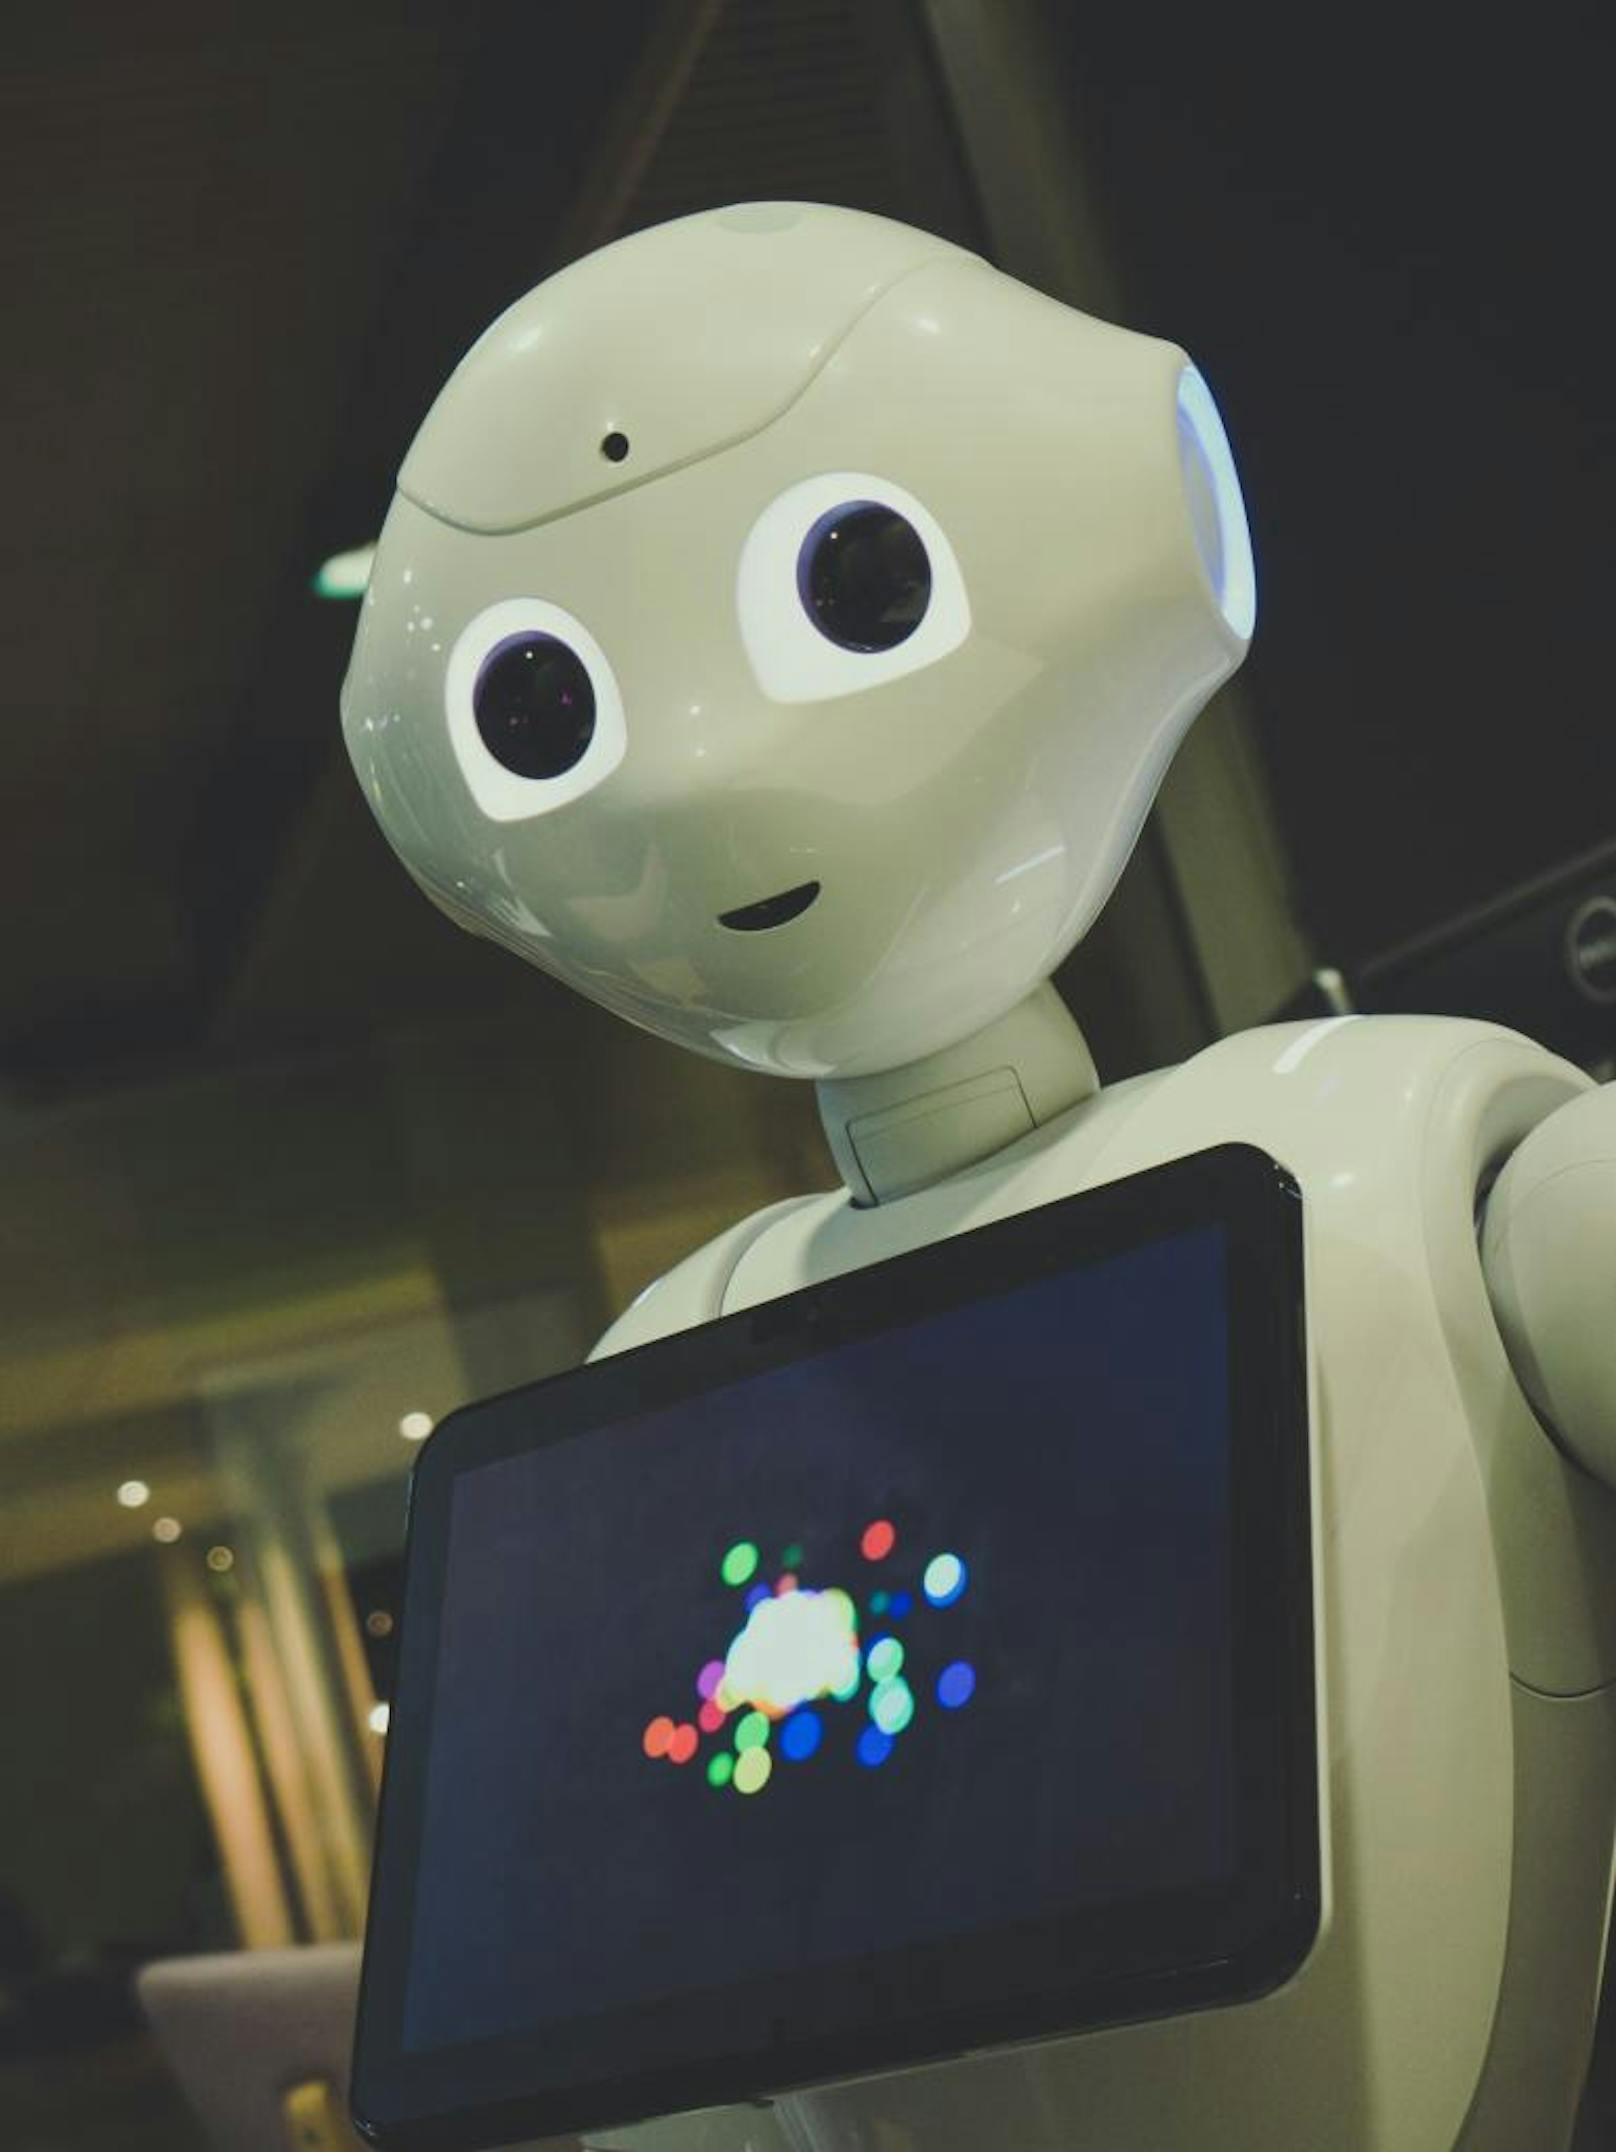 Die Ergebnisse einer neuen Studie von Fujitsu zeigen, dass Arbeitnehmer bereit sind, Künstliche Intelligenz (KI) für eine Steigerung der Produktivität zu nutzen. Laut dieser Umfrage glauben die meisten Arbeitnehmer, dass ihre Produktivität trotz längerer Arbeitszeiten sinkt, und dass der Einsatz von KI dem entgegen wirken kann. Fujitsu geht davon aus, dass Arbeitnehmer zunehmend Wert darauf legen, Beruf und Privatleben effektiv zu vereinbaren. Da KI, Machine Learning und Robotic Process Automation immer häufiger eingesetzt werden, werden die Mitarbeiter in diesem Zusammenhang grundlegende Prozesse von ihren Arbeitgebern erwarten, wie beispielsweise Onboarding-Aktivitäten oder Automatisierung von Serviceanfragen. 